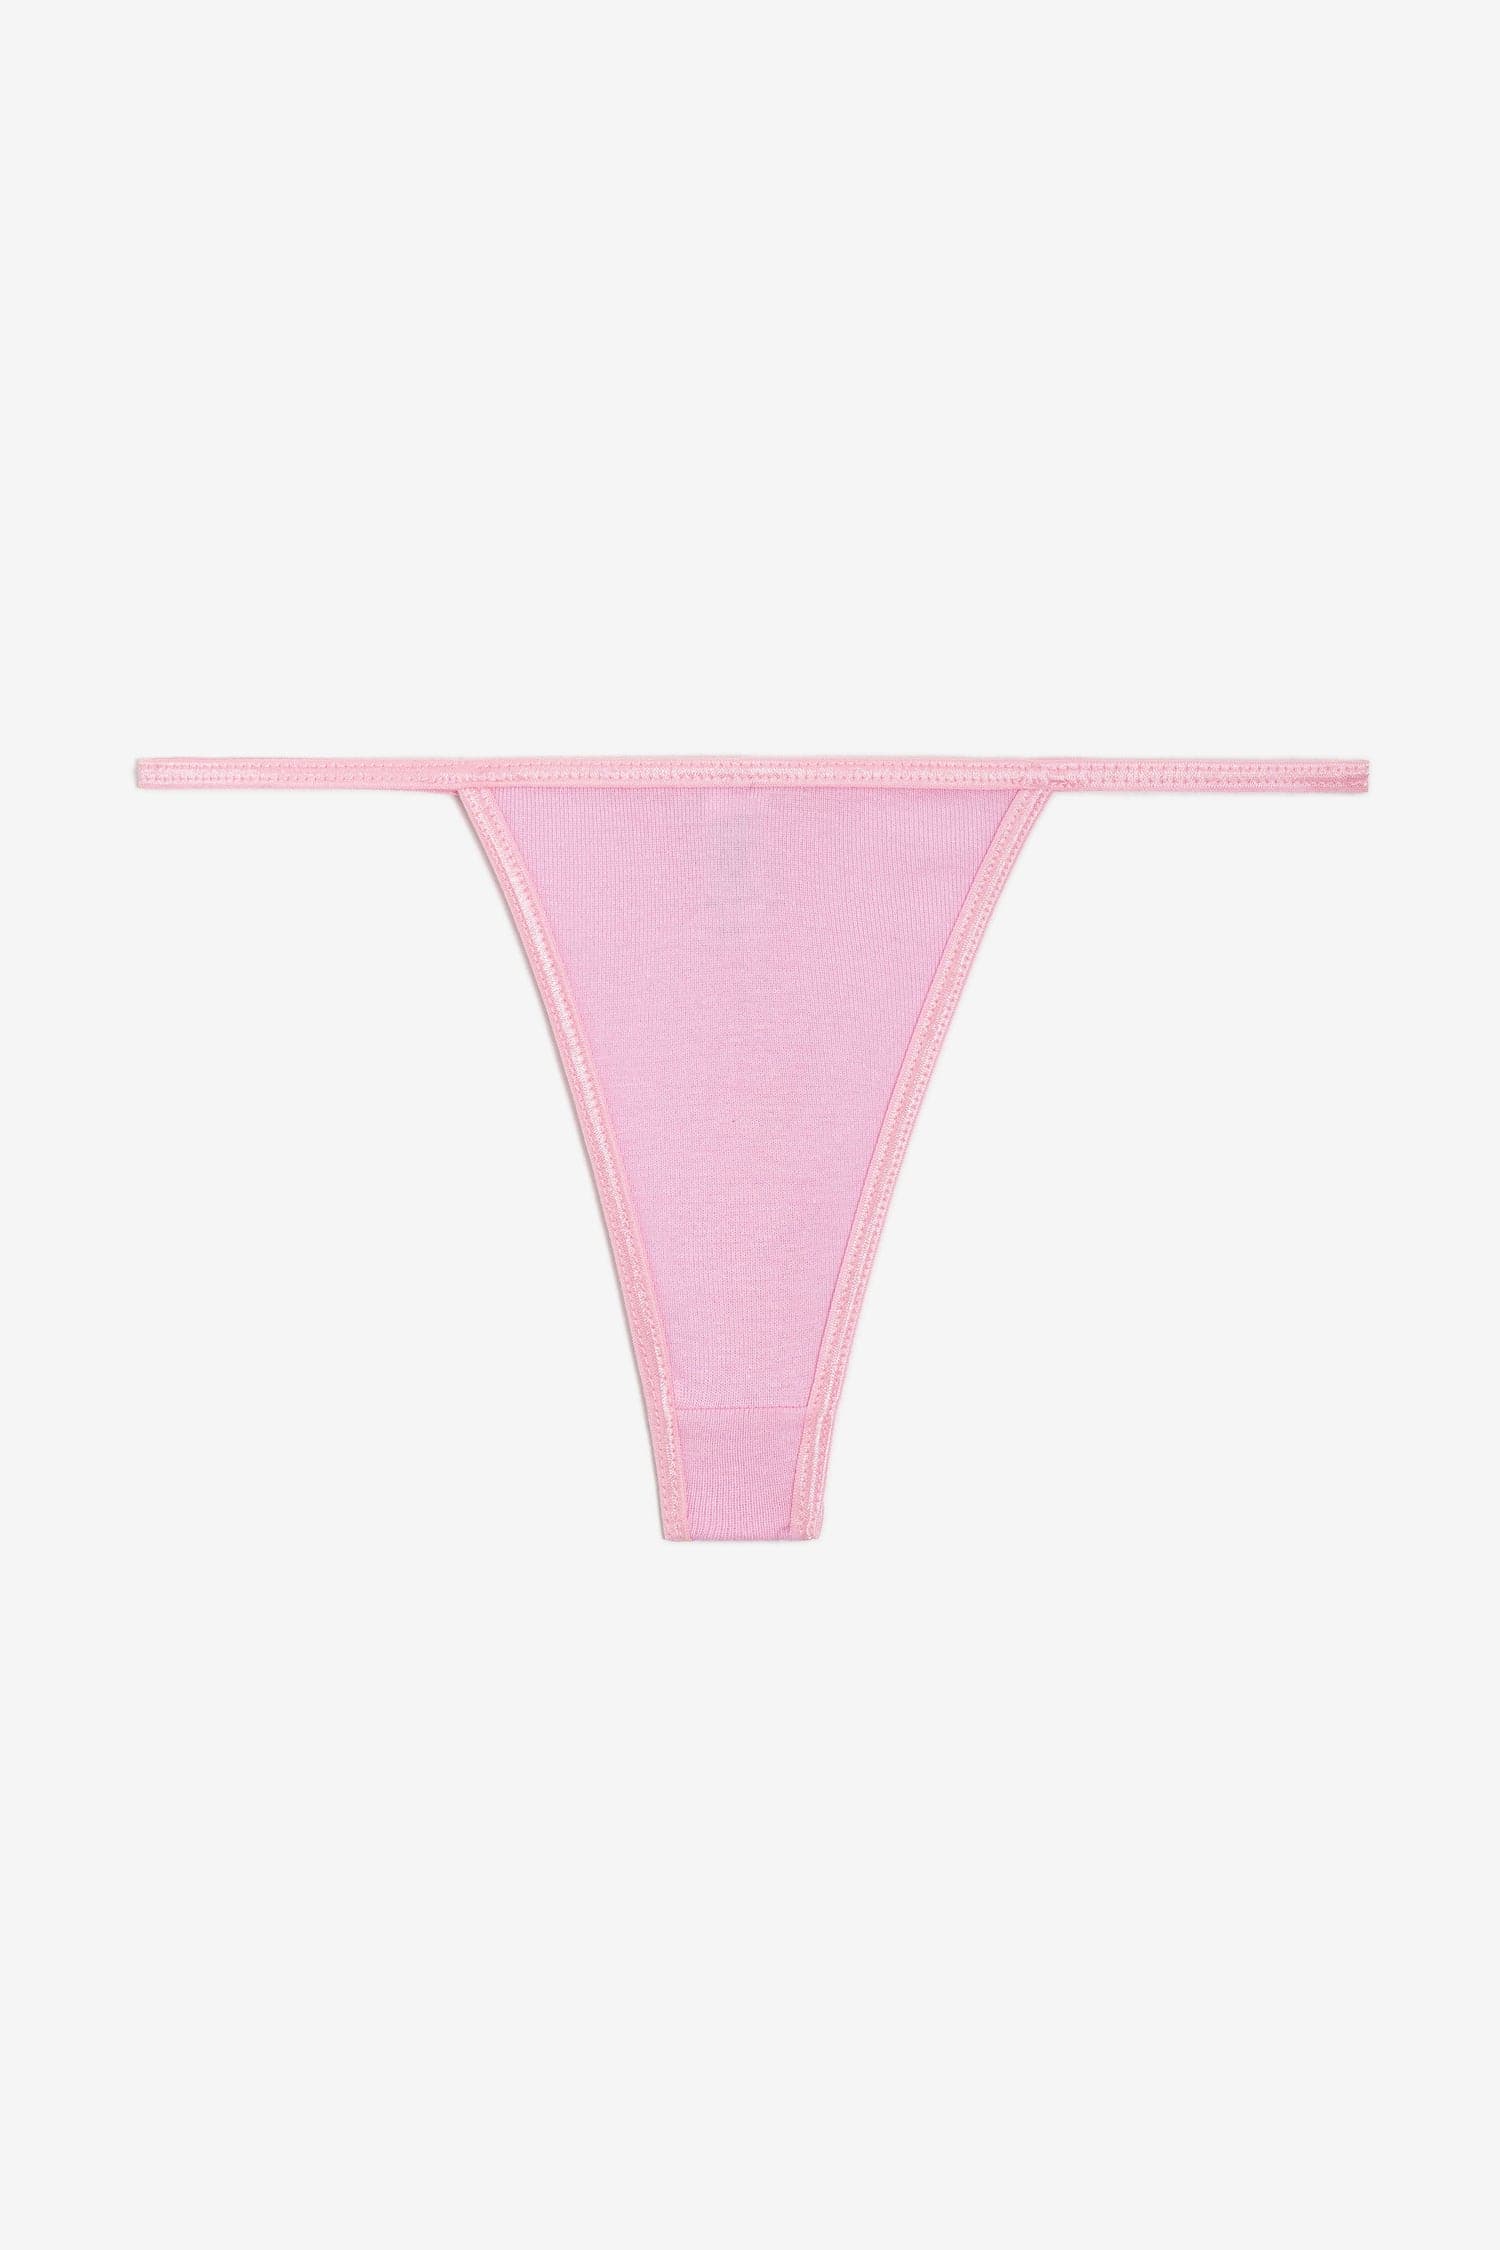 Victorias Secret PINK Knee High Socks Pink Tie Dye Nigeria